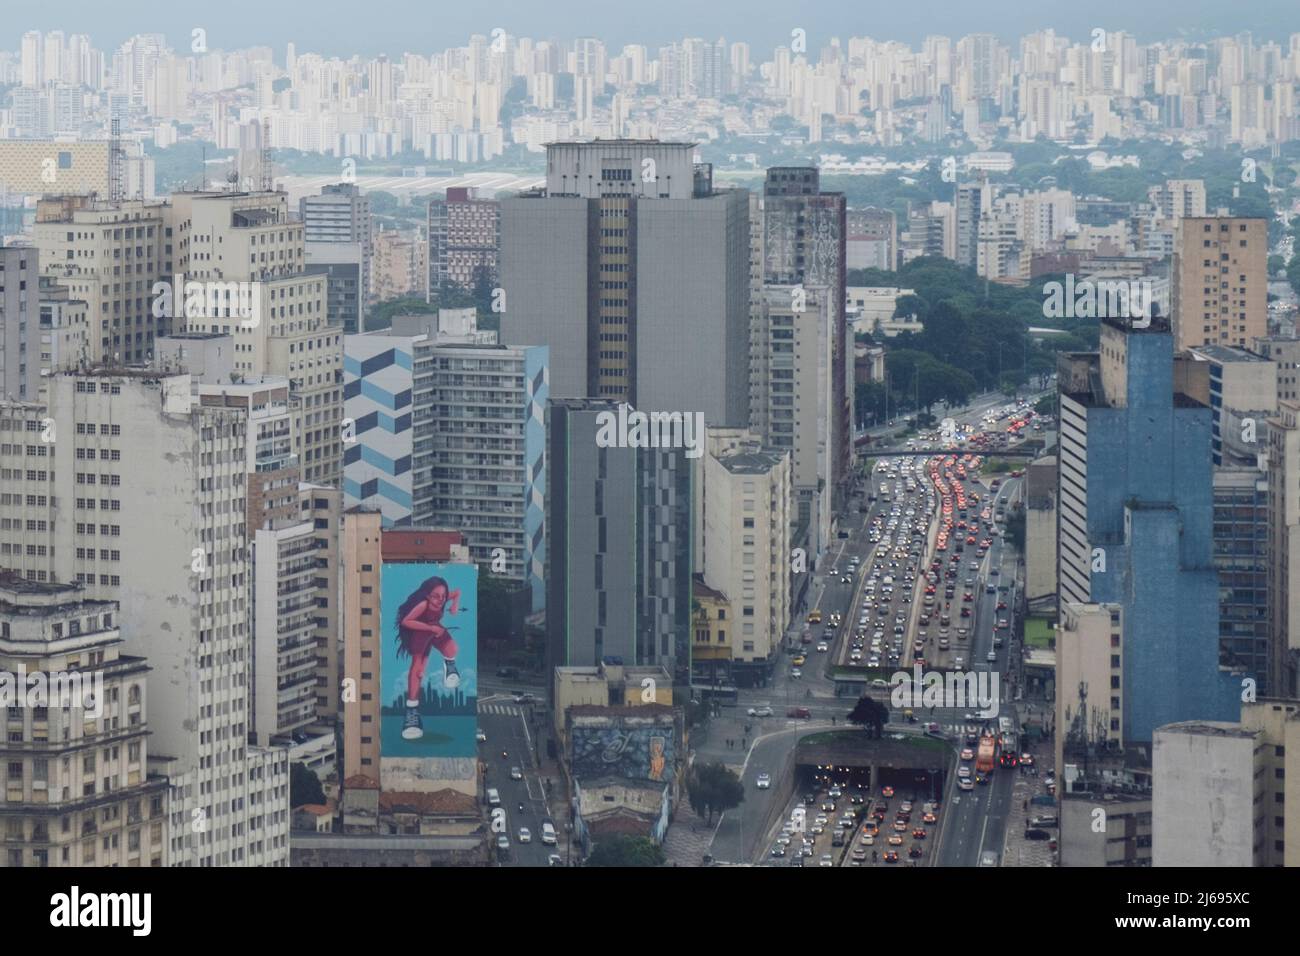 Vue en hauteur des gratte-ciels du centre-ville, circulation intense sur l'avenue Prestes Maia, ciel de la saison des pluies, Sao Paulo, Brésil Banque D'Images